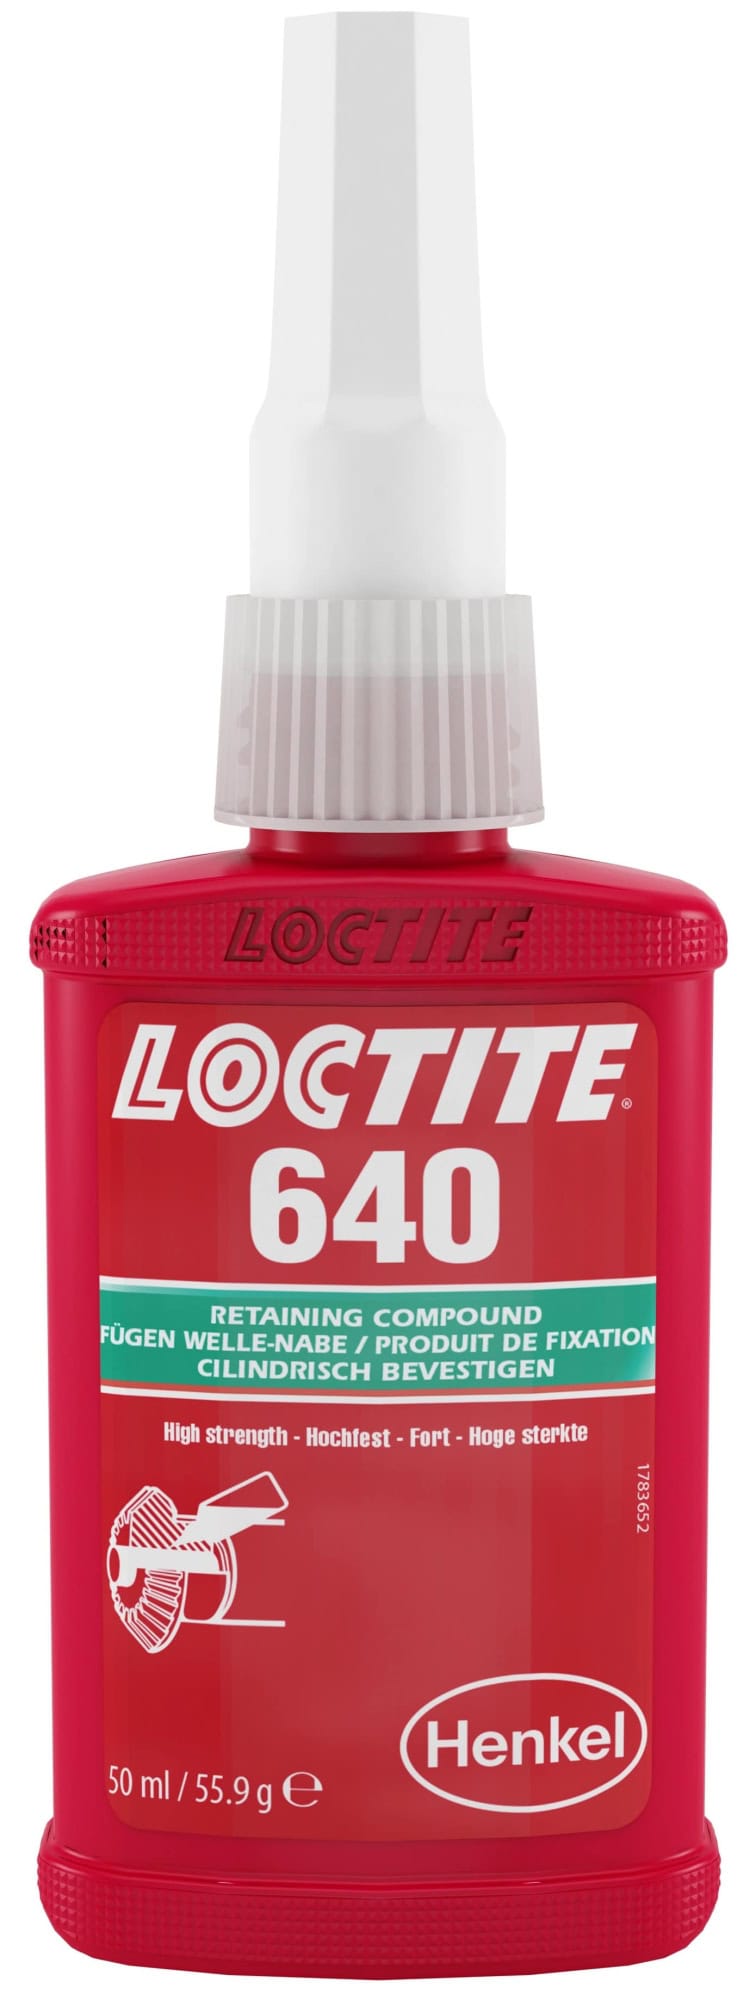 Henkel™ Loctite® Fügeklebstoff 640, 50 ml, Grün, Für längere Bearbeitungszeit